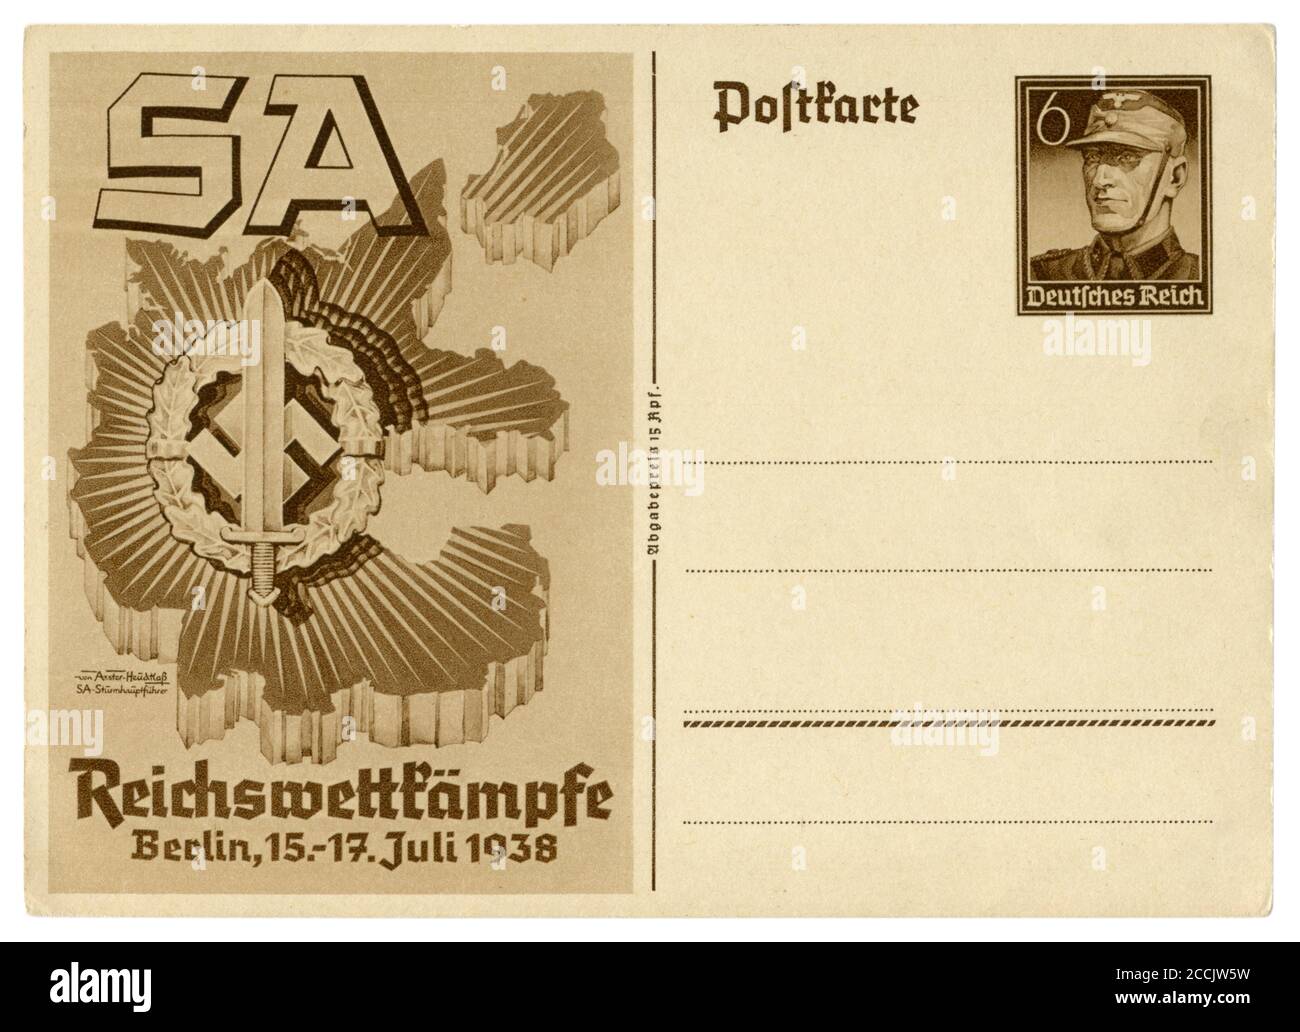 Carte postale historique allemande : événements sportifs des unités d'assaut de la sa à Berlin, sa badge sportif, timbre imprimé, Allemagne, troisième Reich, 1938 Banque D'Images